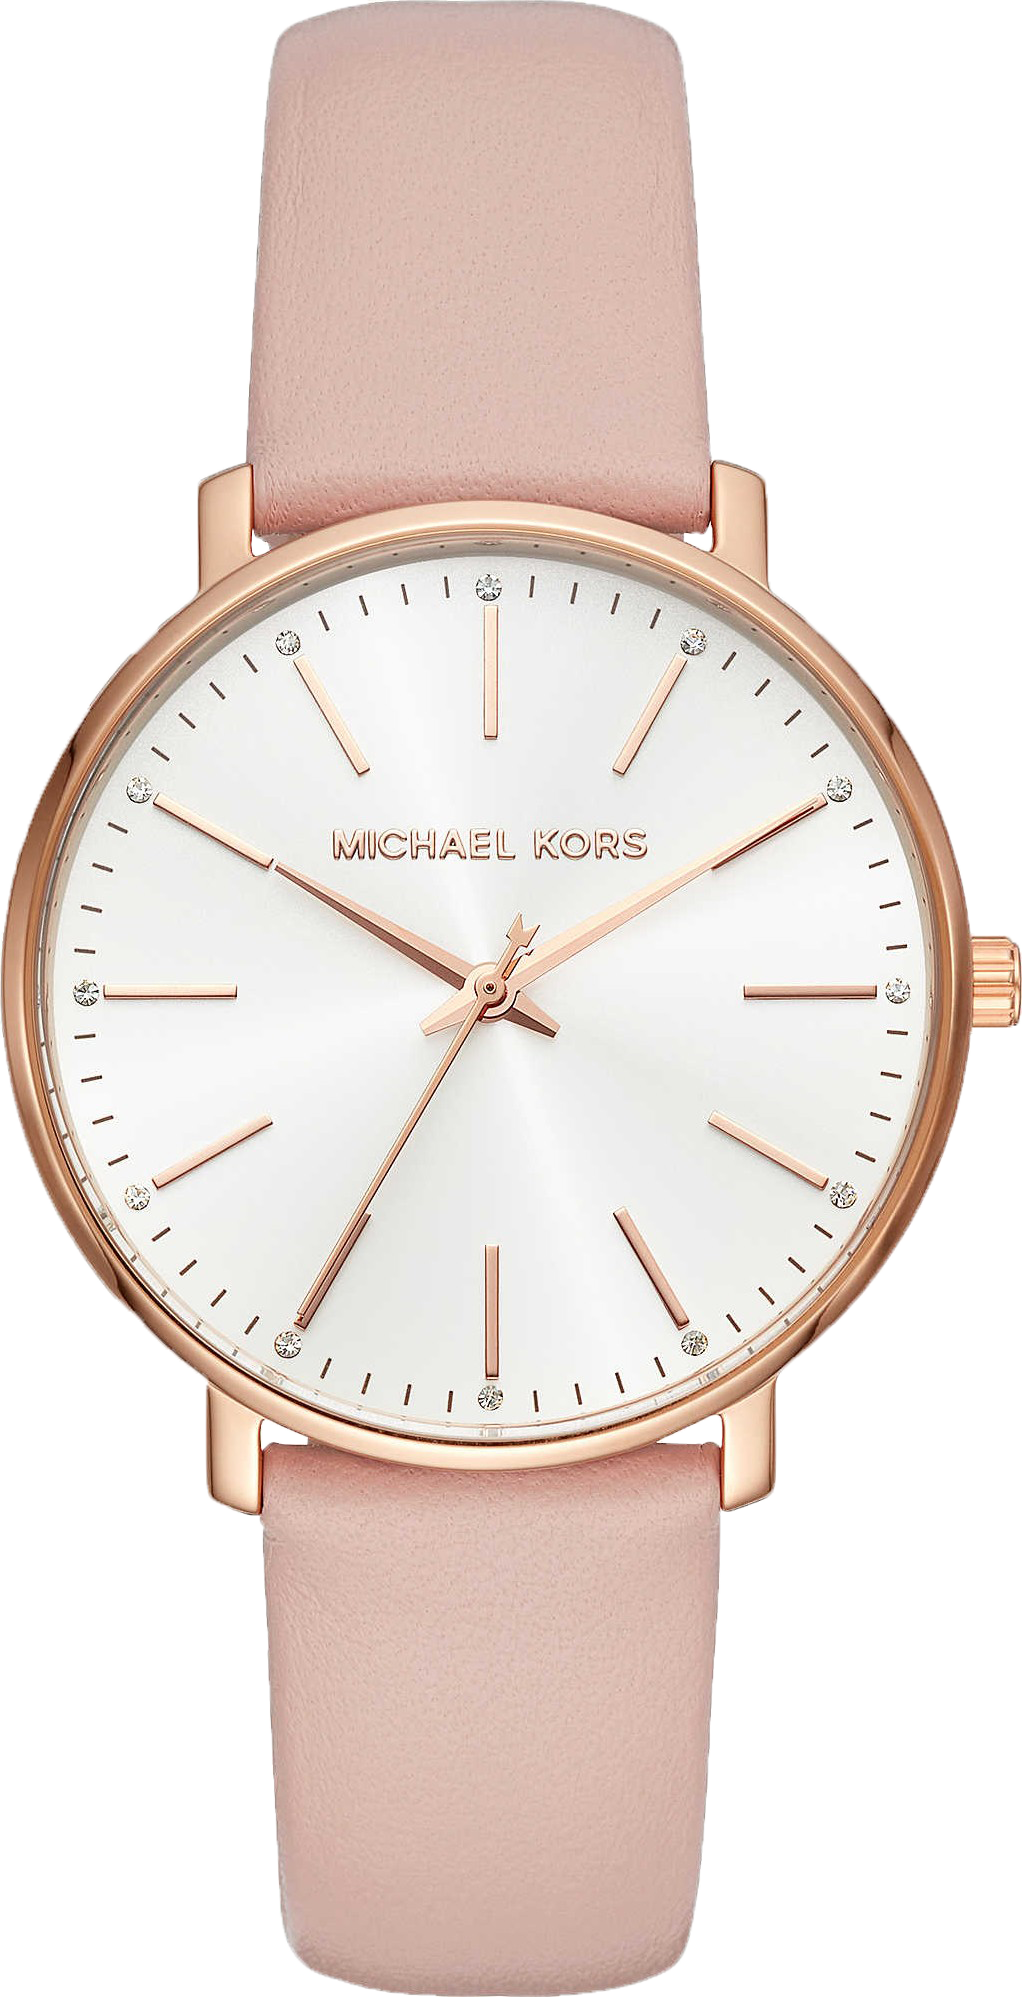 Michael Kors Watches Leather Best Sale  saarakarkulahtifi 1690744789